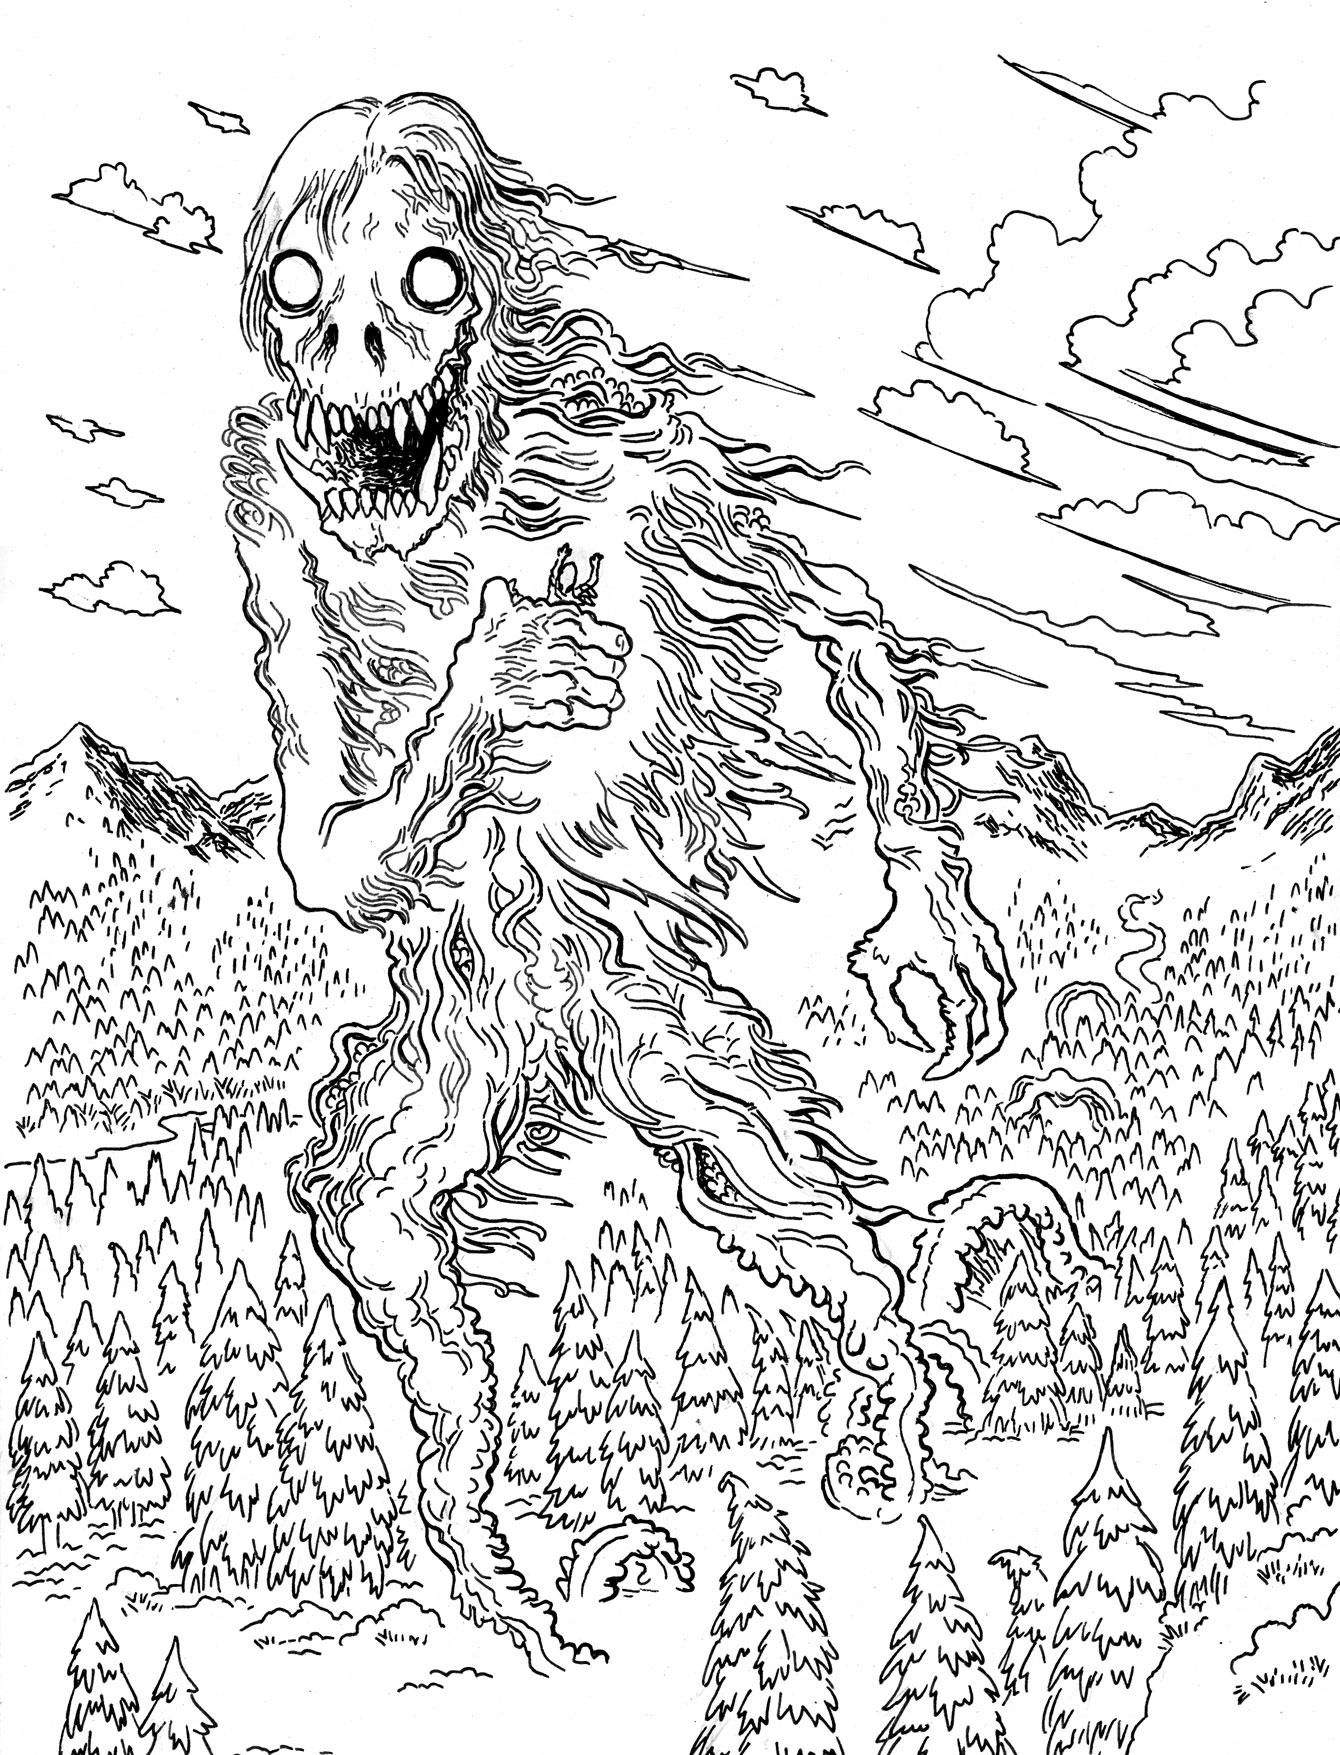 Lovecraft Sketch MWF: Ithaqua